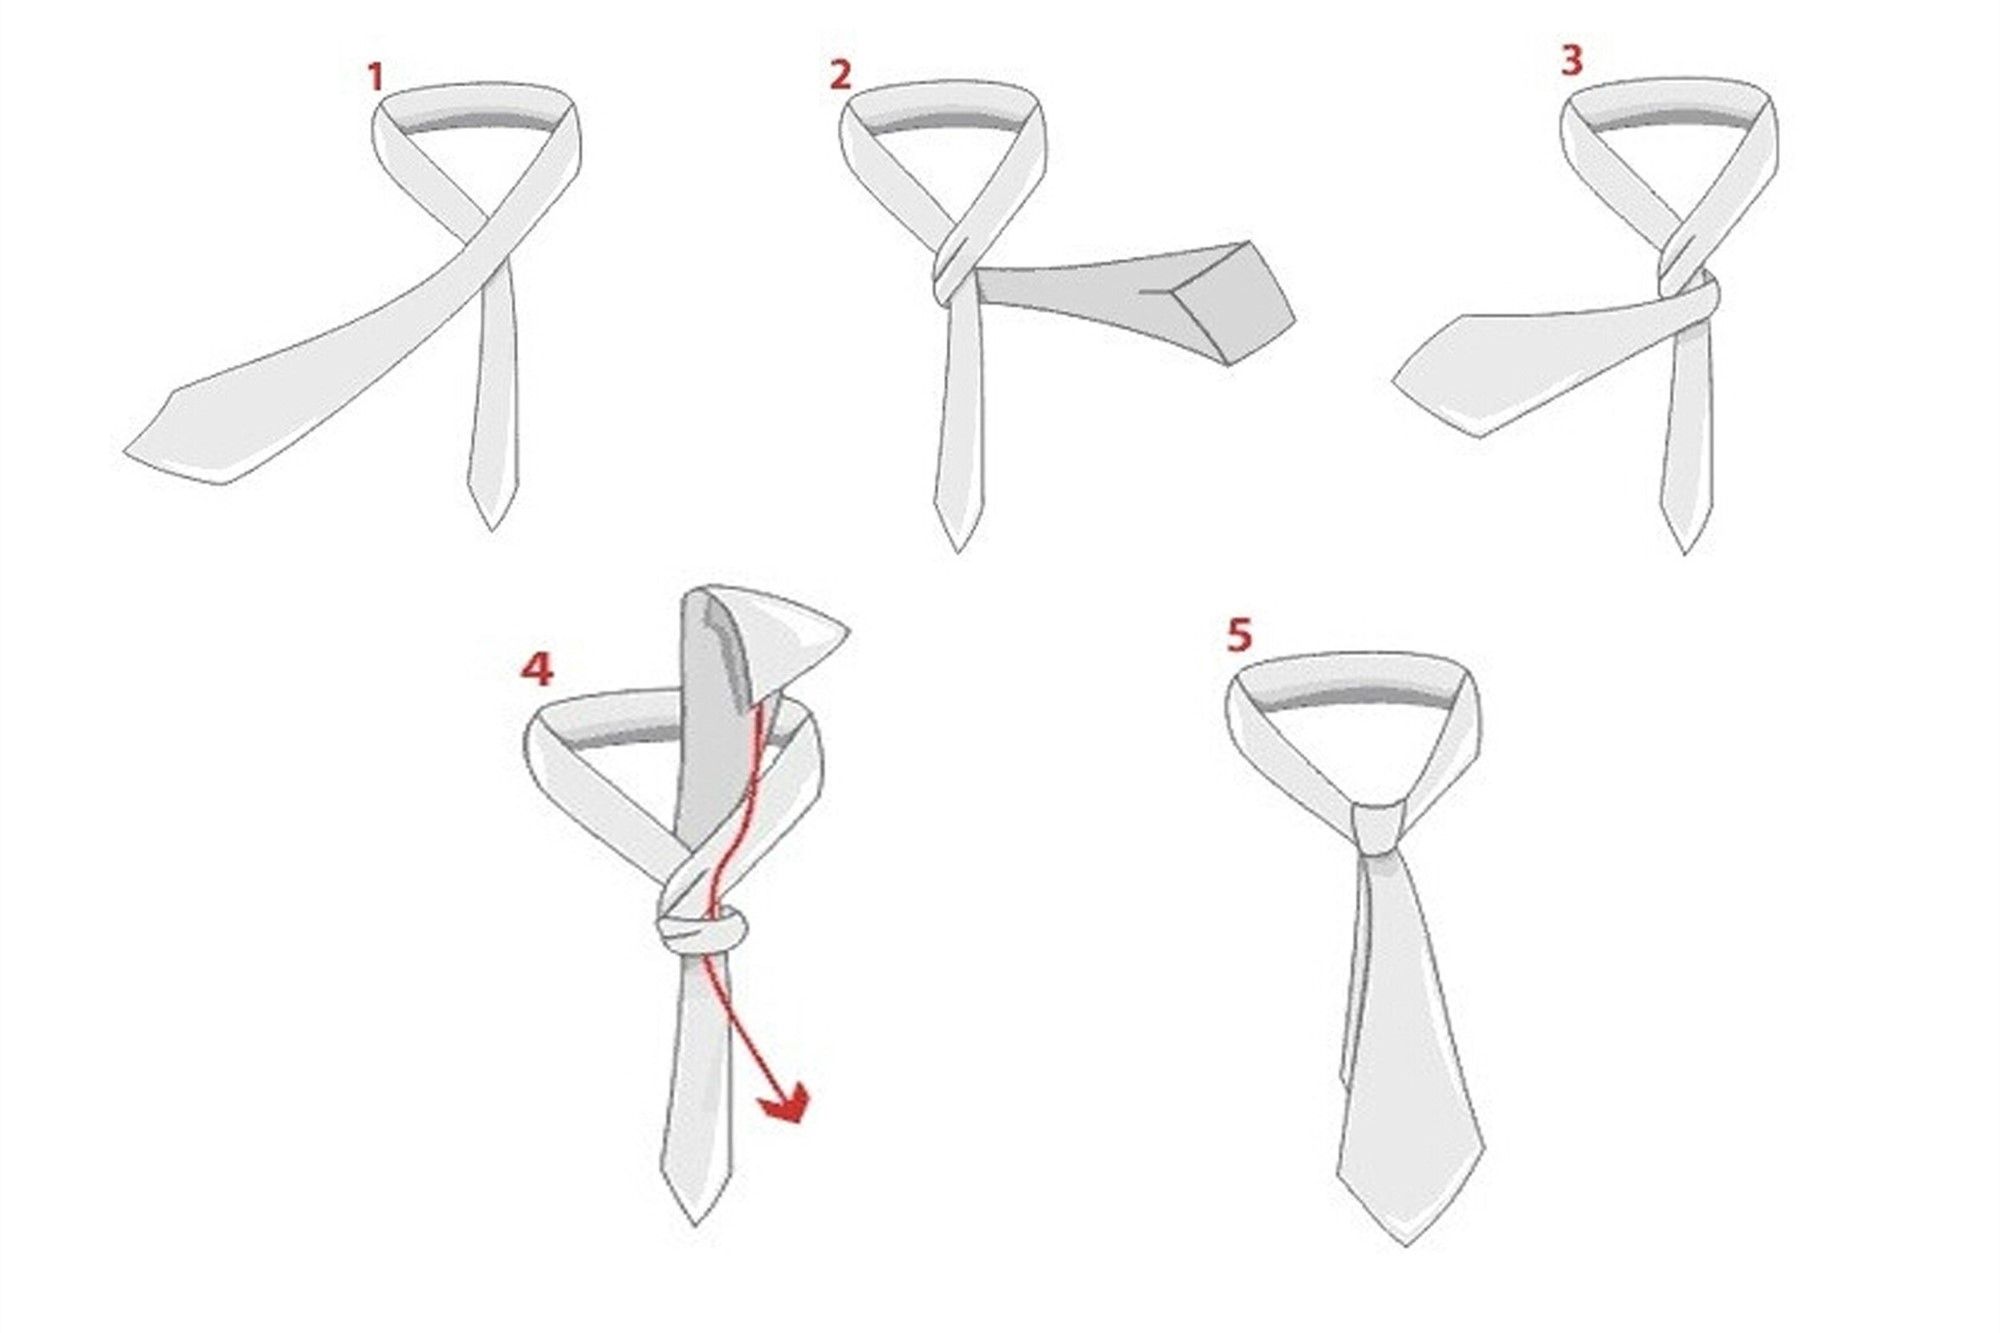 这种打法几乎适用于各种材质的领带和各种场合,深受各位男士的喜爱